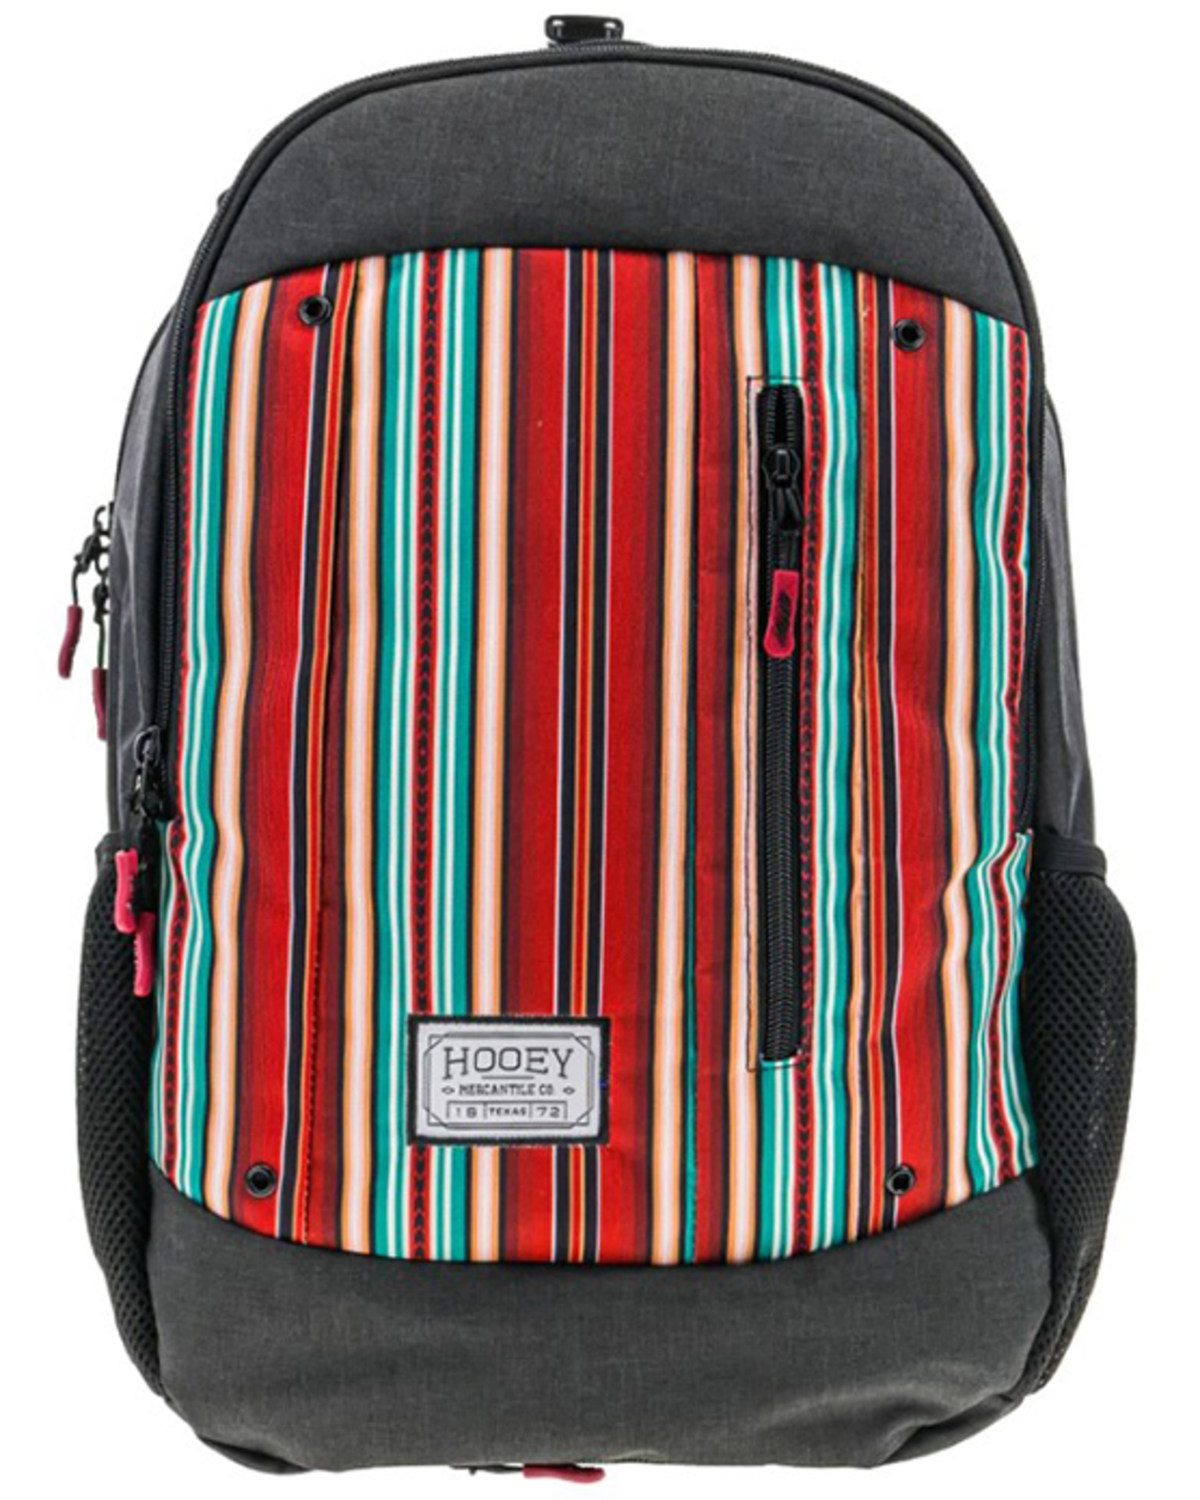 Hooey Men's Rockstar Serape Striped Backpack